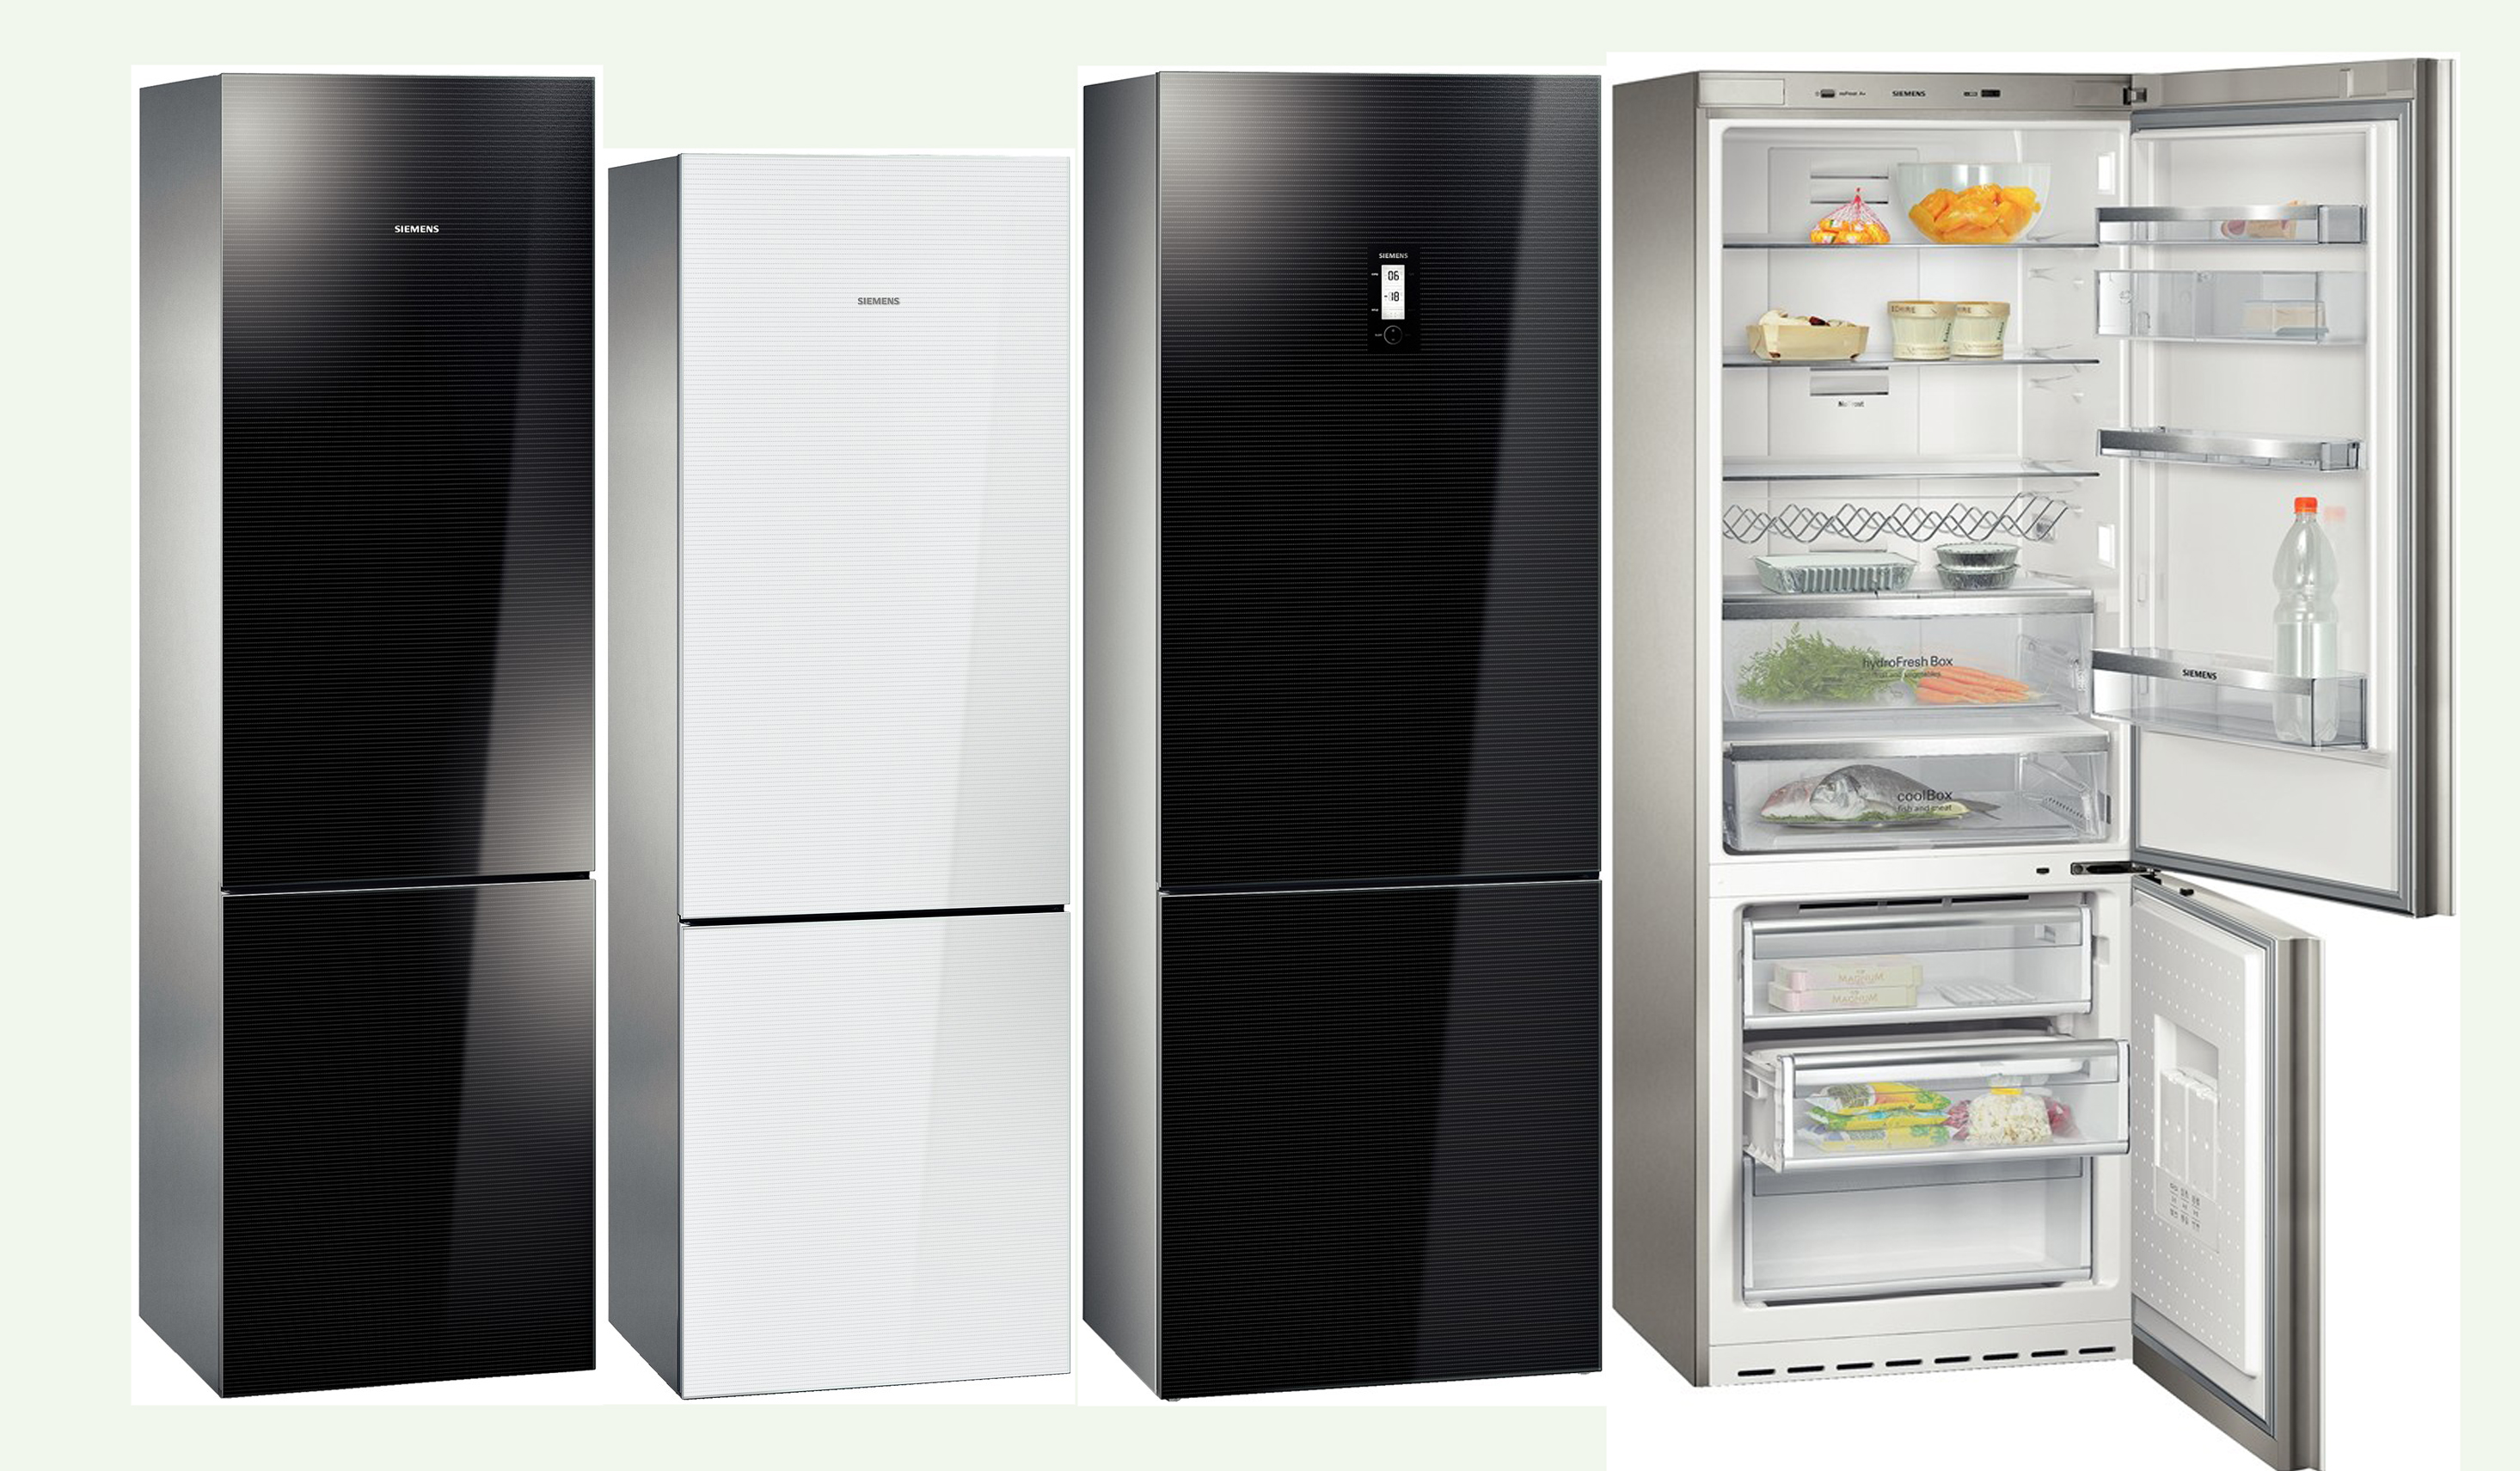 Сток холодильника. Холодильник Siemens buzdolabi. Холодильник Siemens kg49nsb2ar. Многокамерные холодильники Сименс. Трёхкамерный холодильник Сименс.